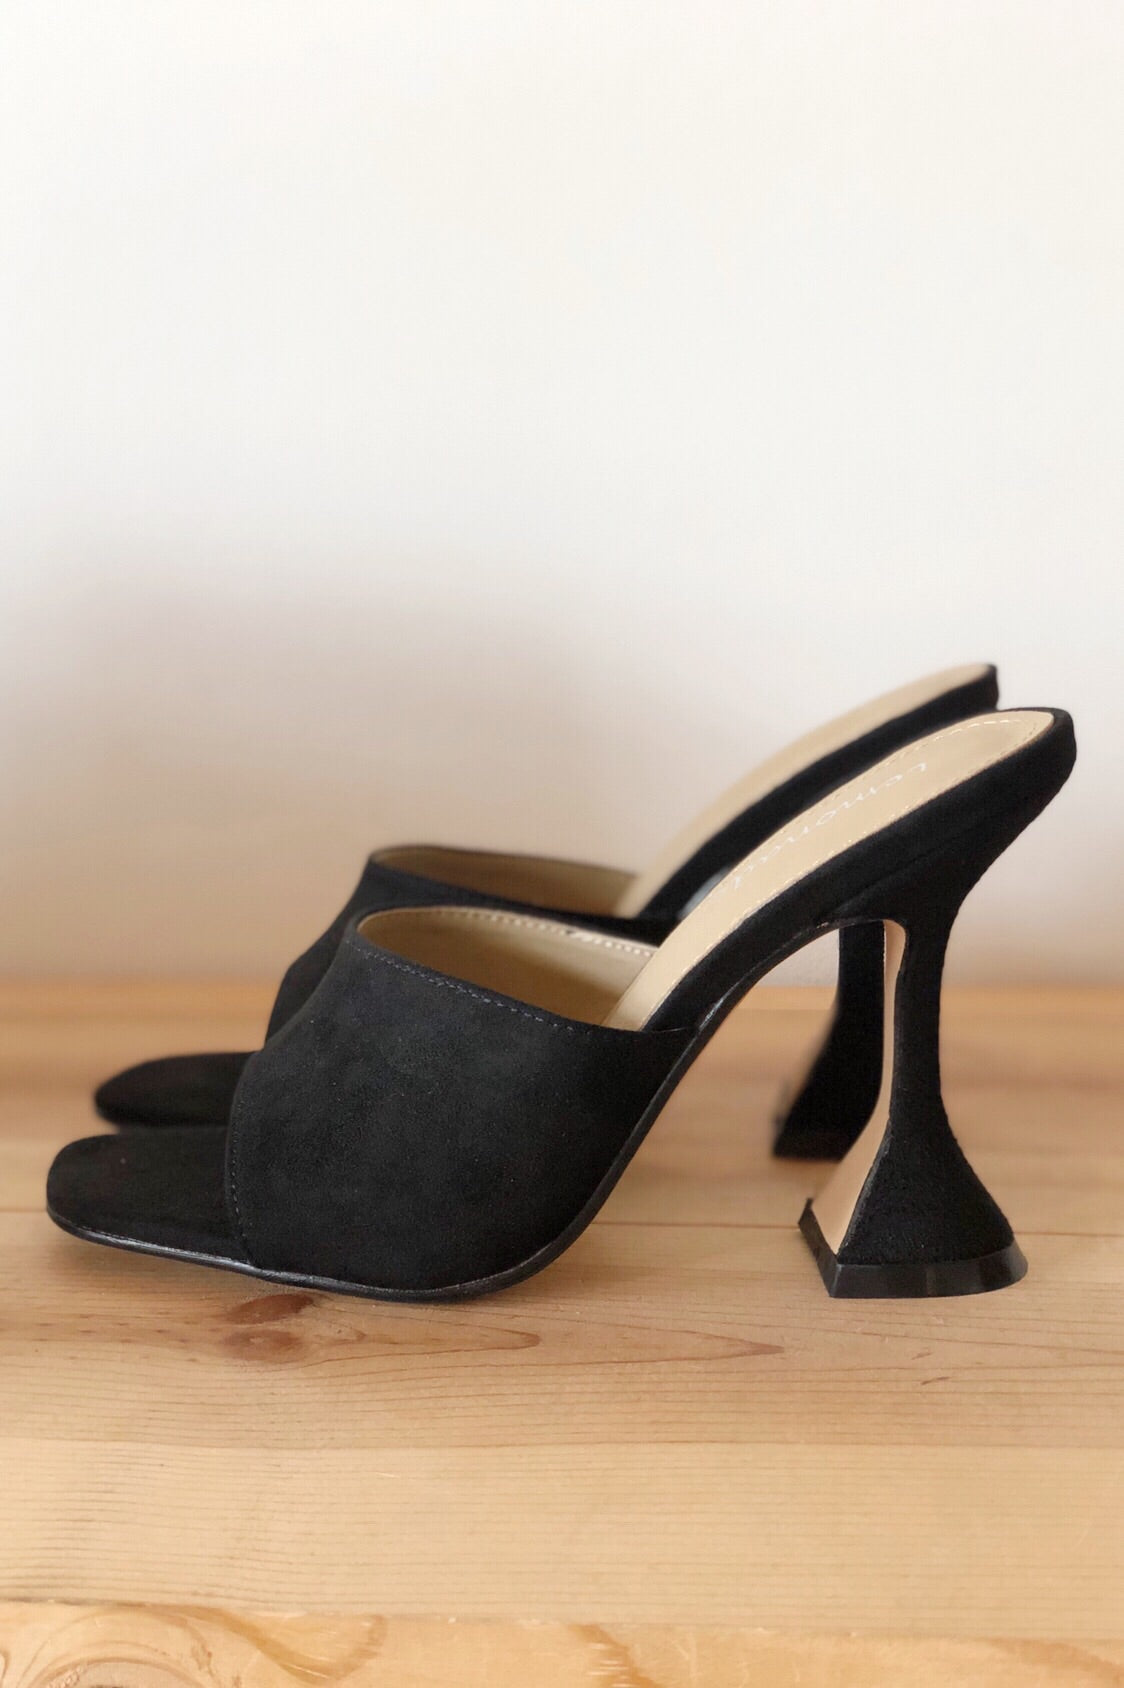 nice heels